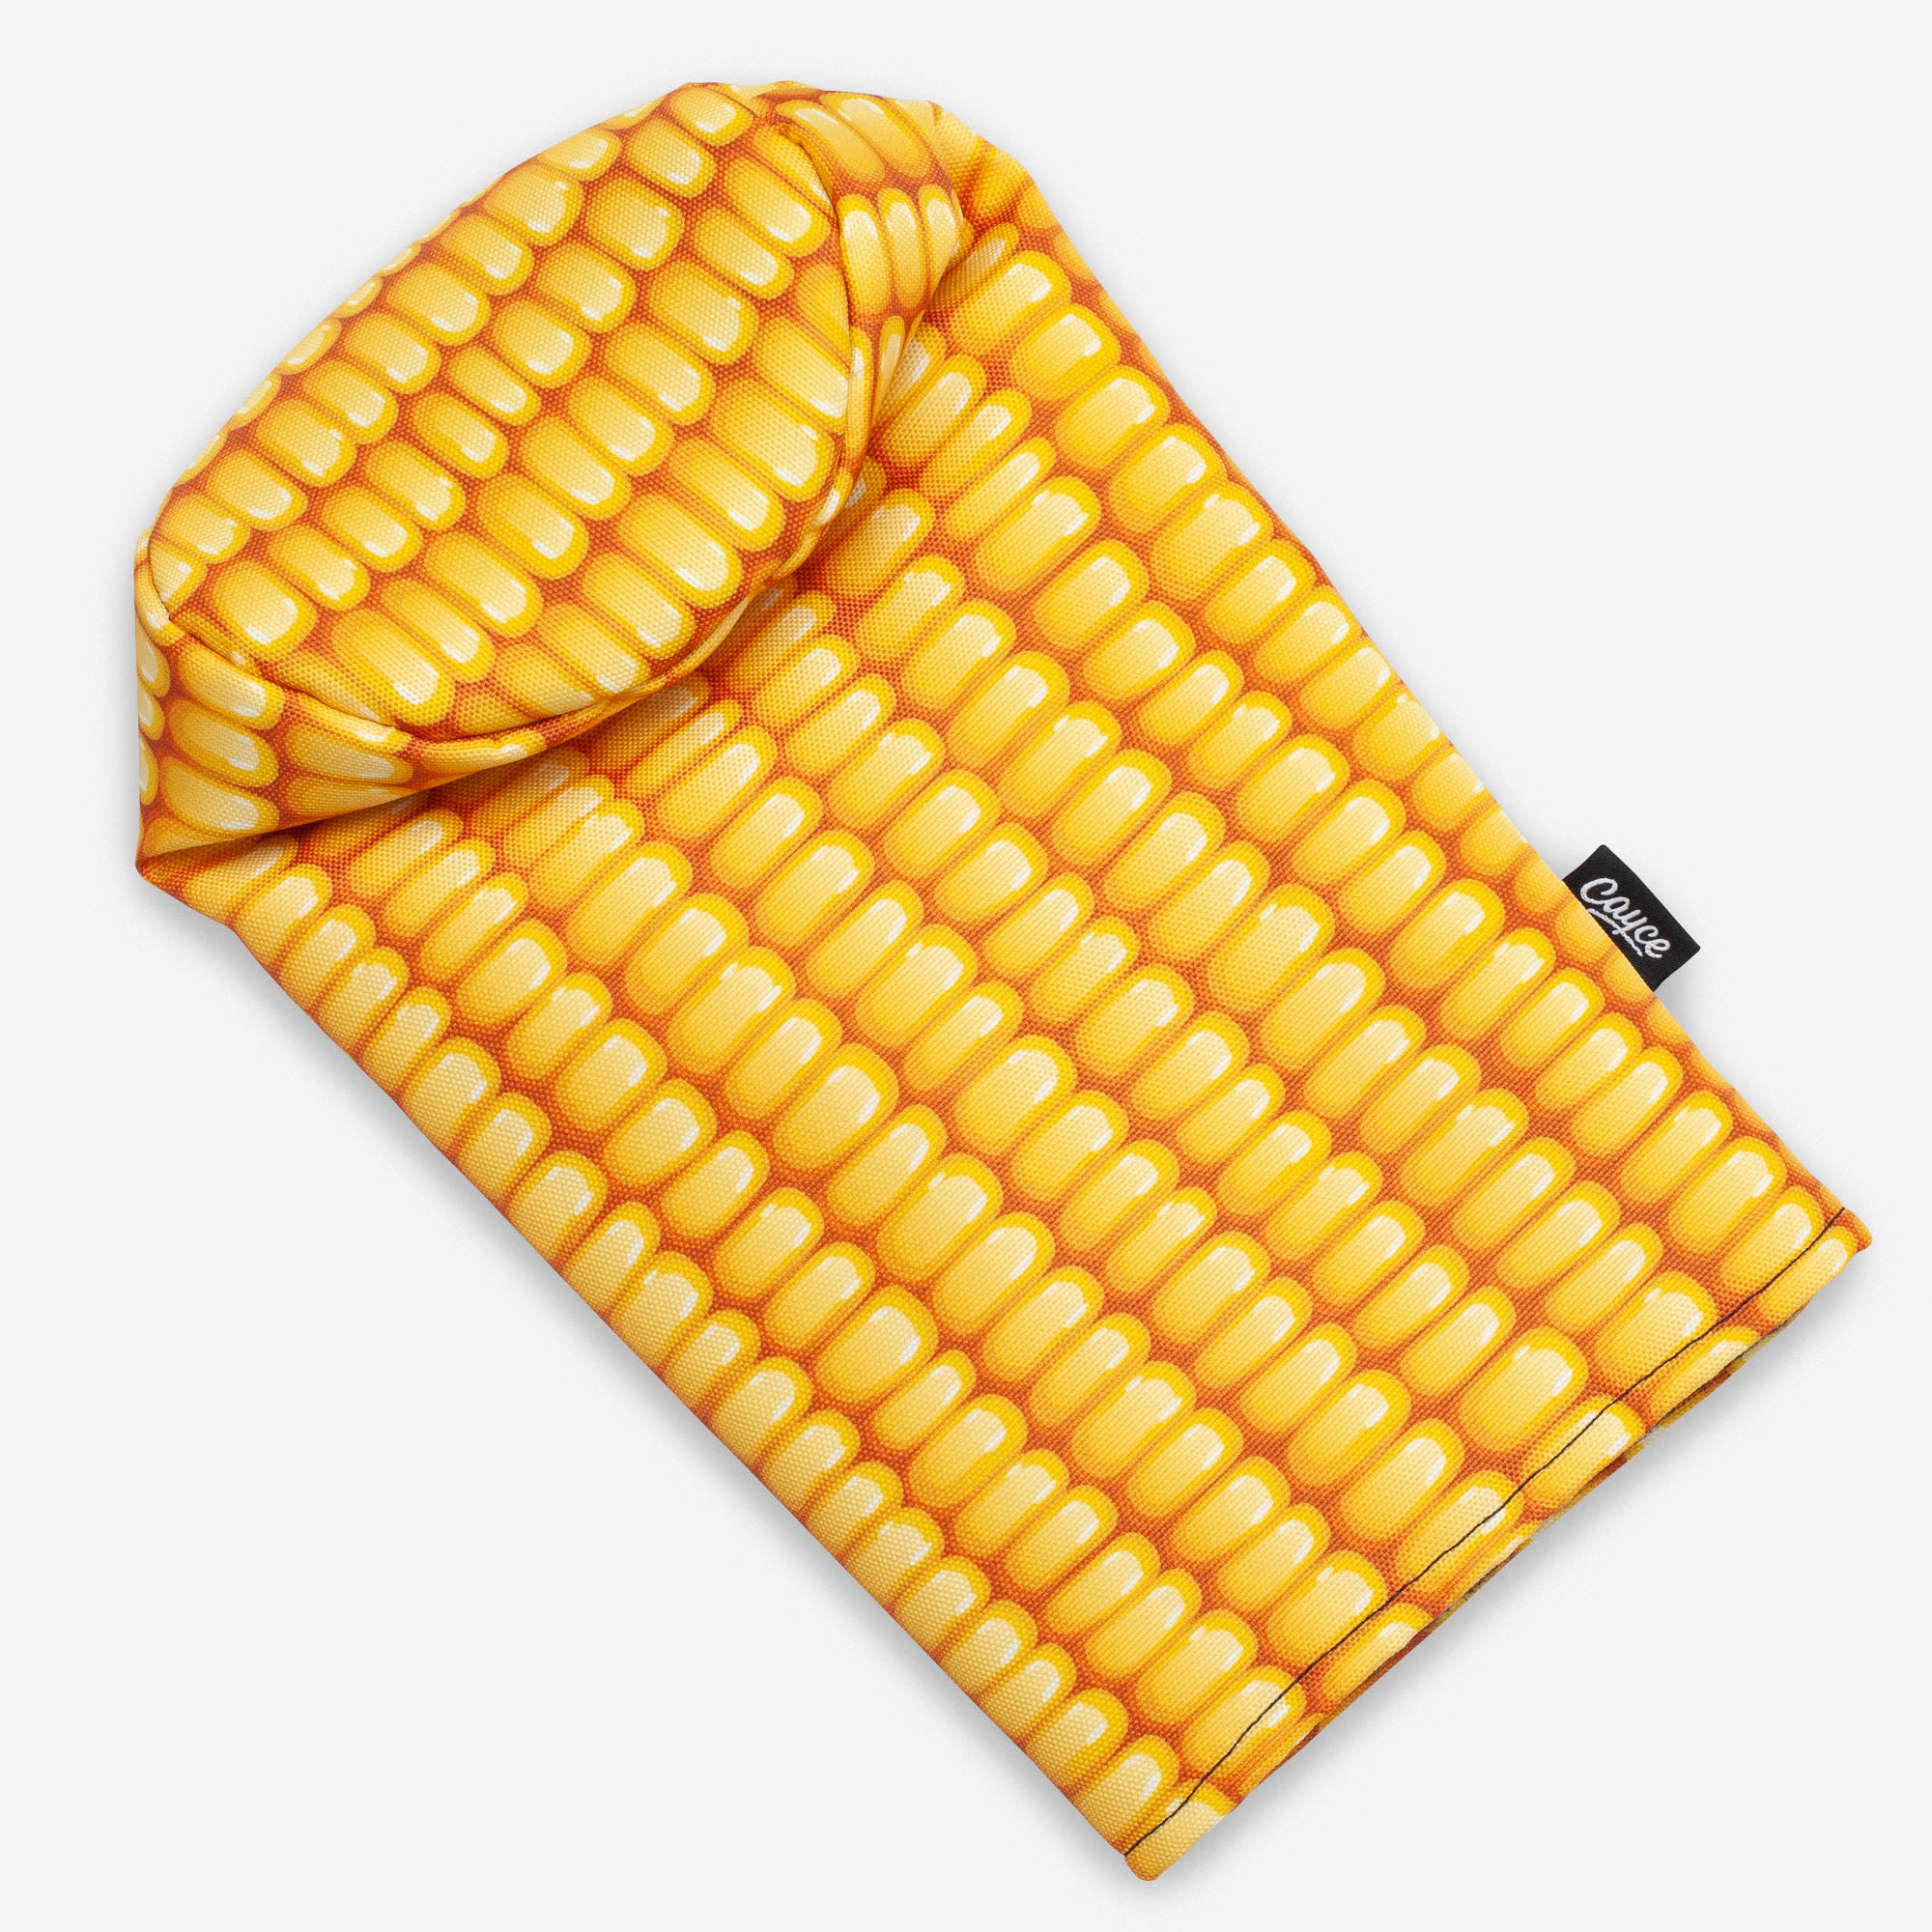 It's Corn! Golf Head Cover DURA+